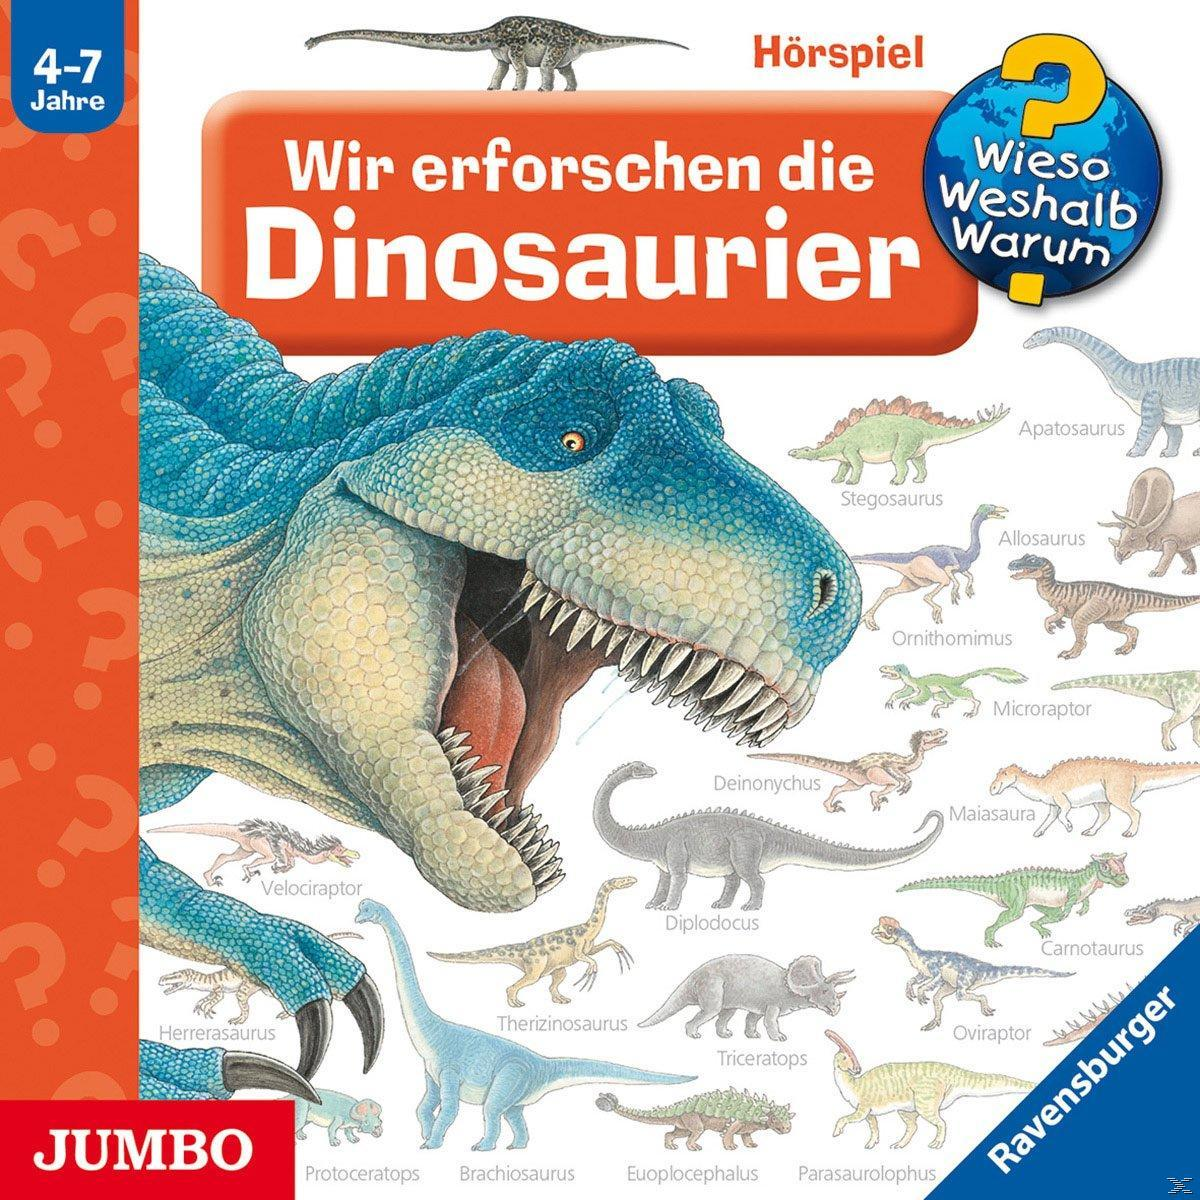 Dinosaurier erforschen Wir Wieso? Warum? (CD) die Weshalb? -